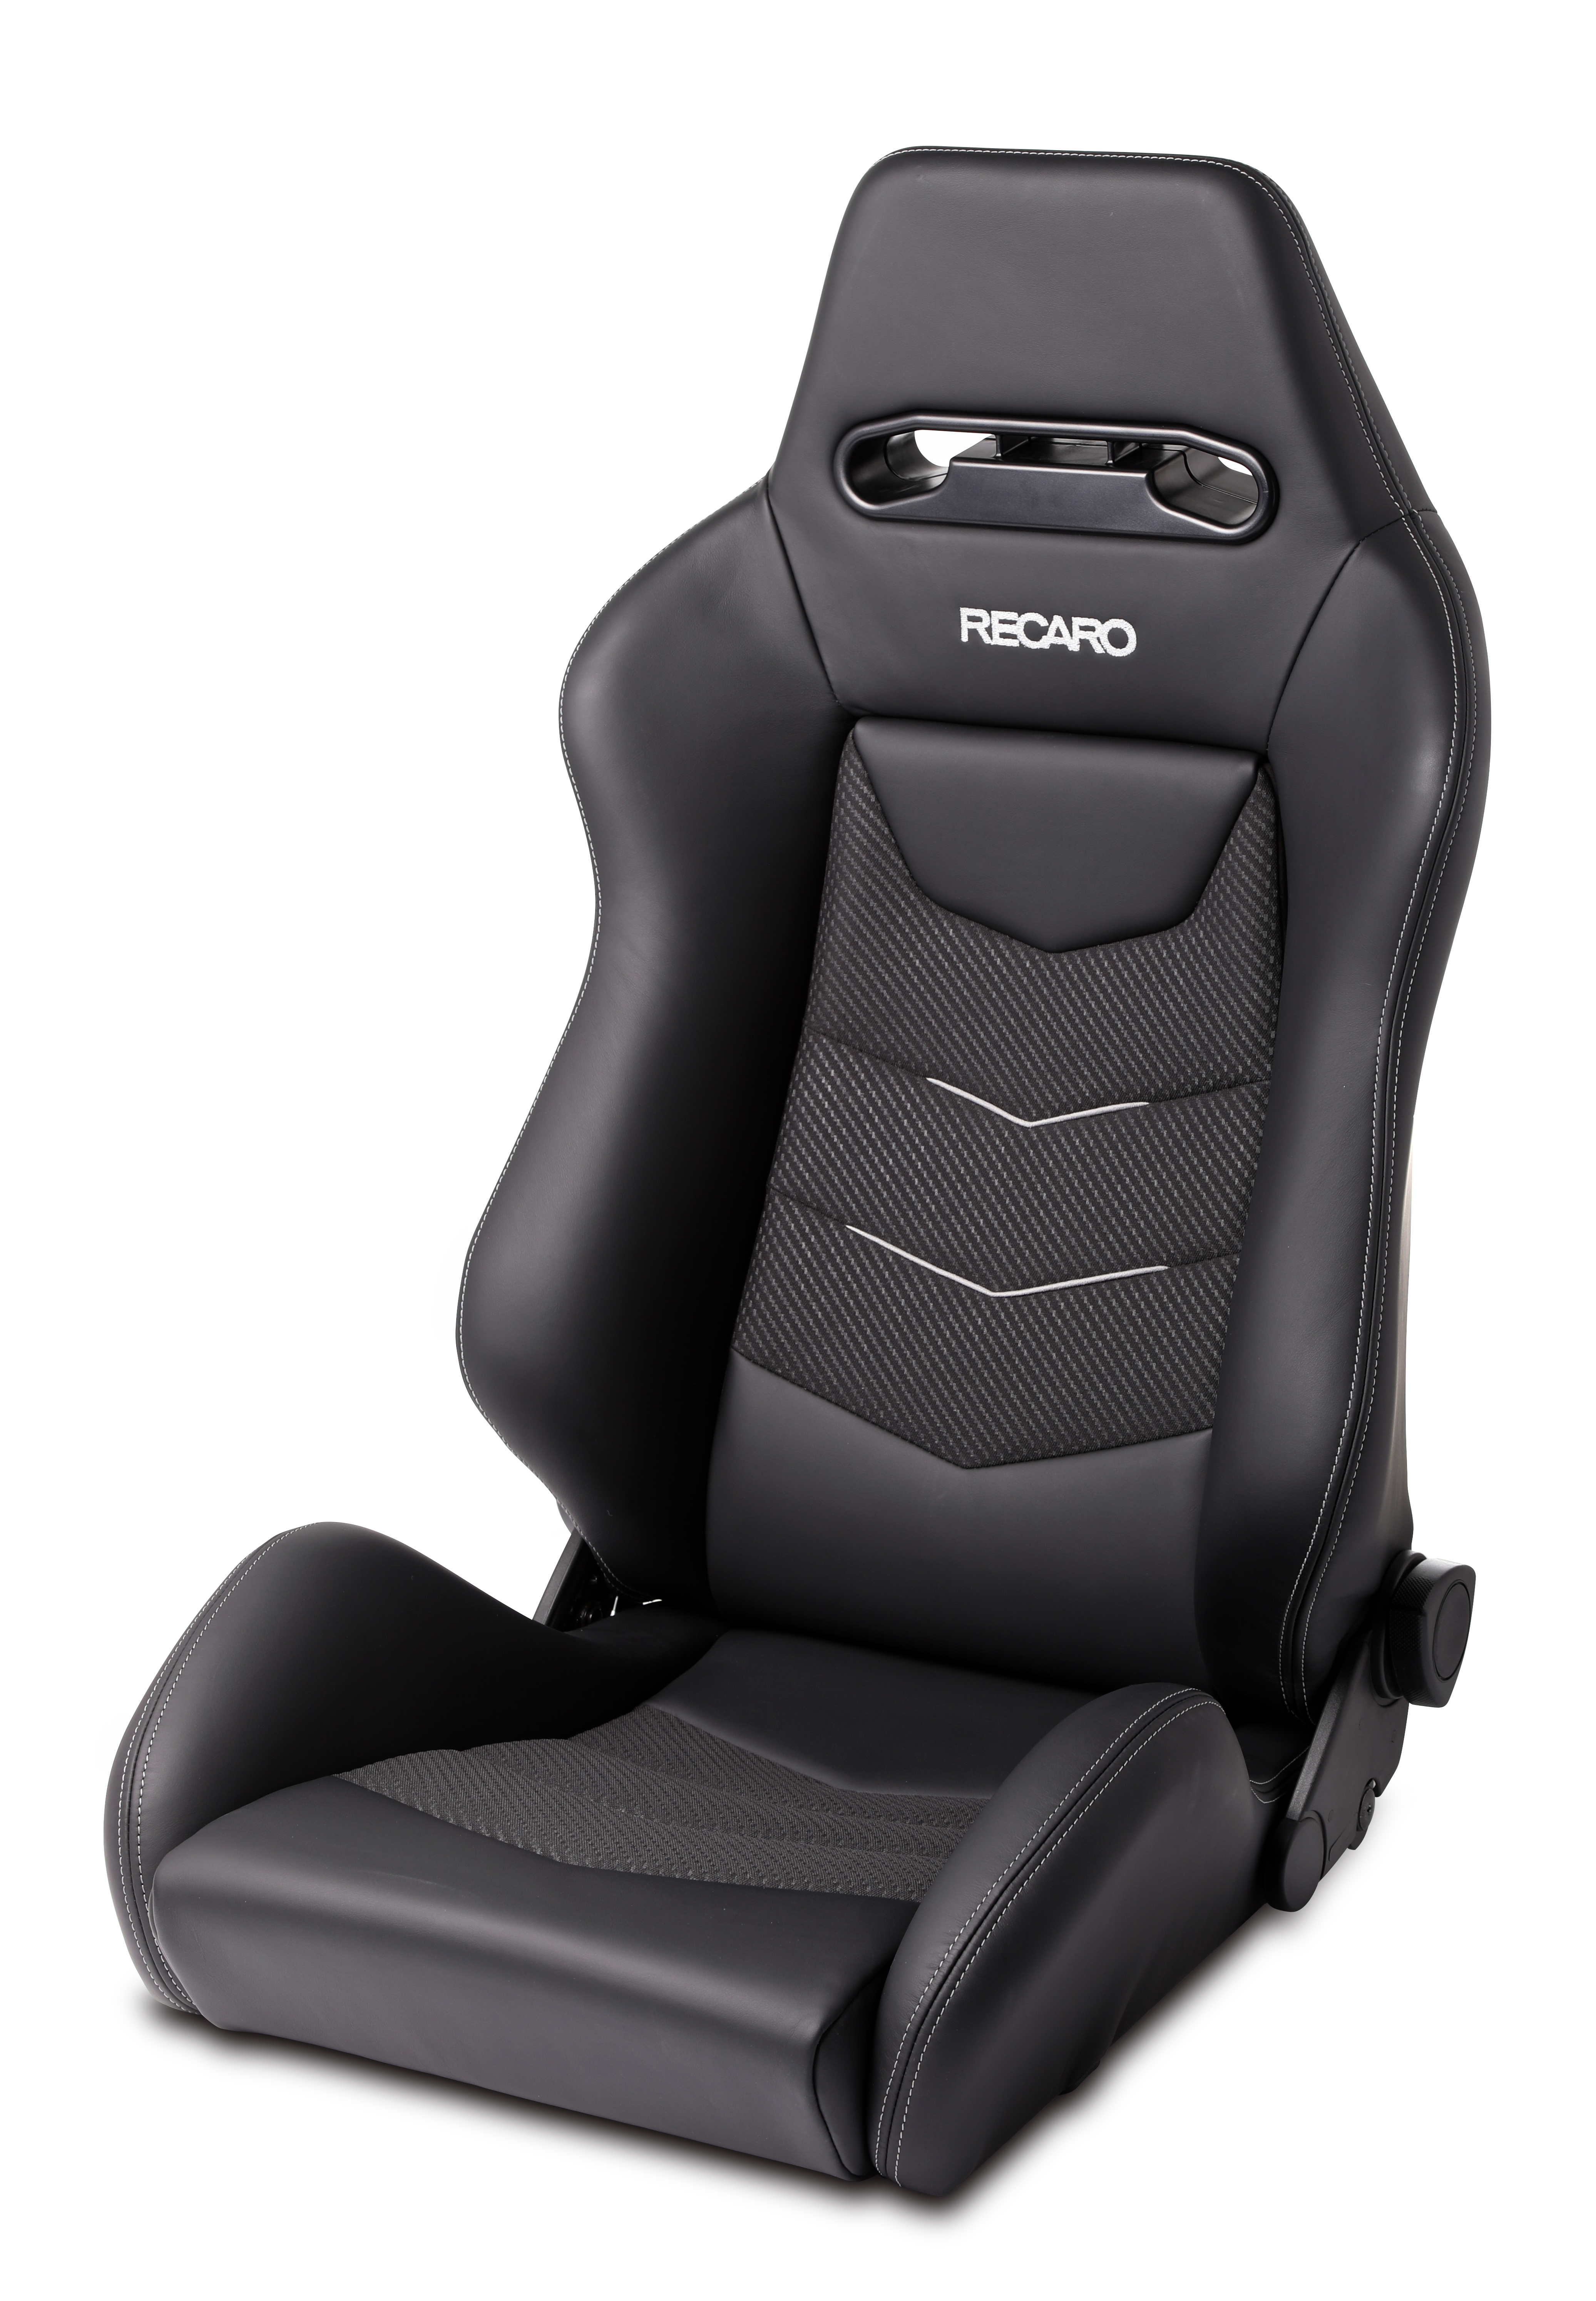 New Recaro Speed V Sport Seat Revealed at SEMA